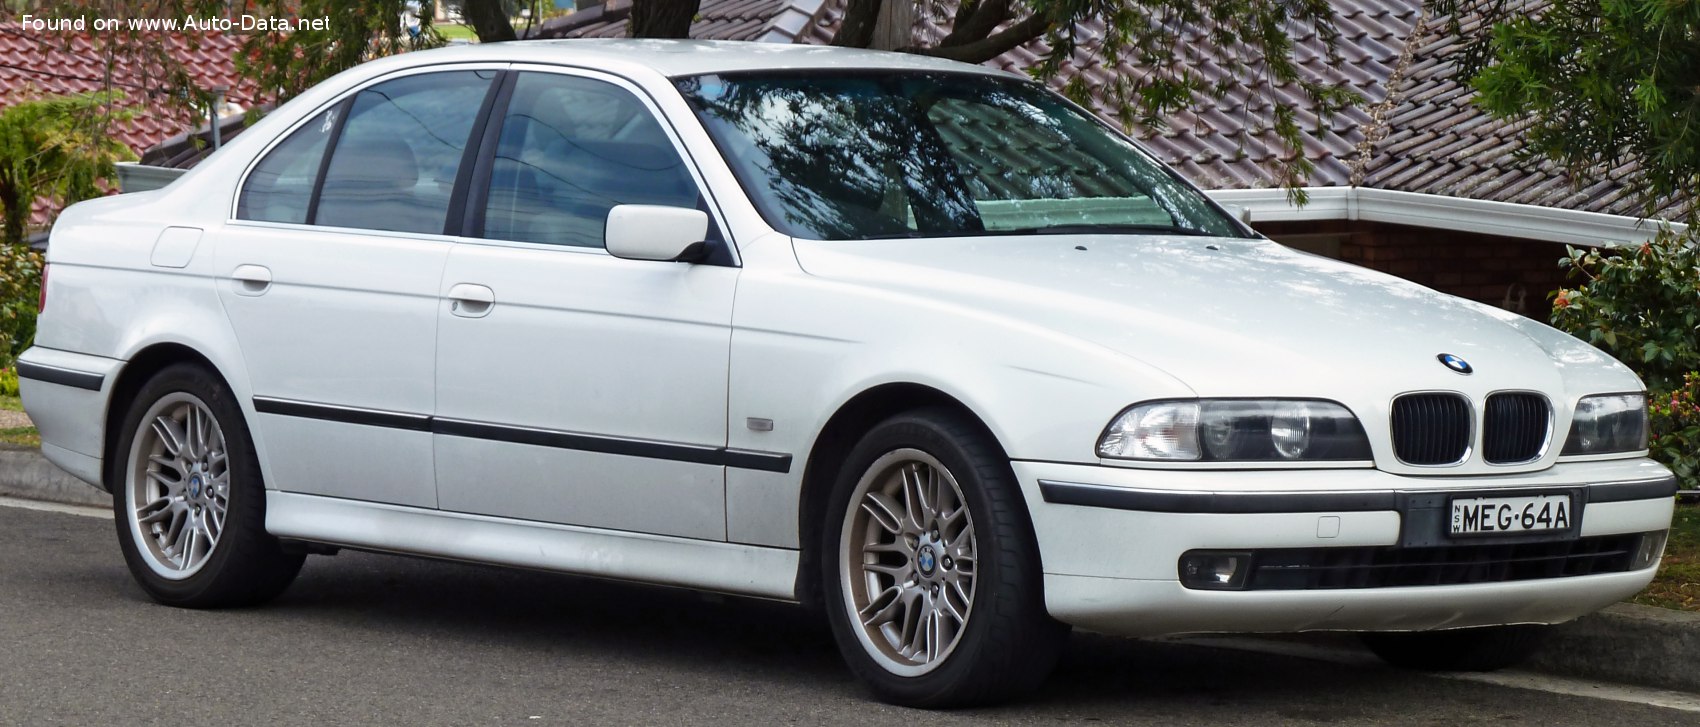 1998 BMW 5 Series (E39) 528i (193 Hp) | Technical specs, data, fuel  consumption, Dimensions